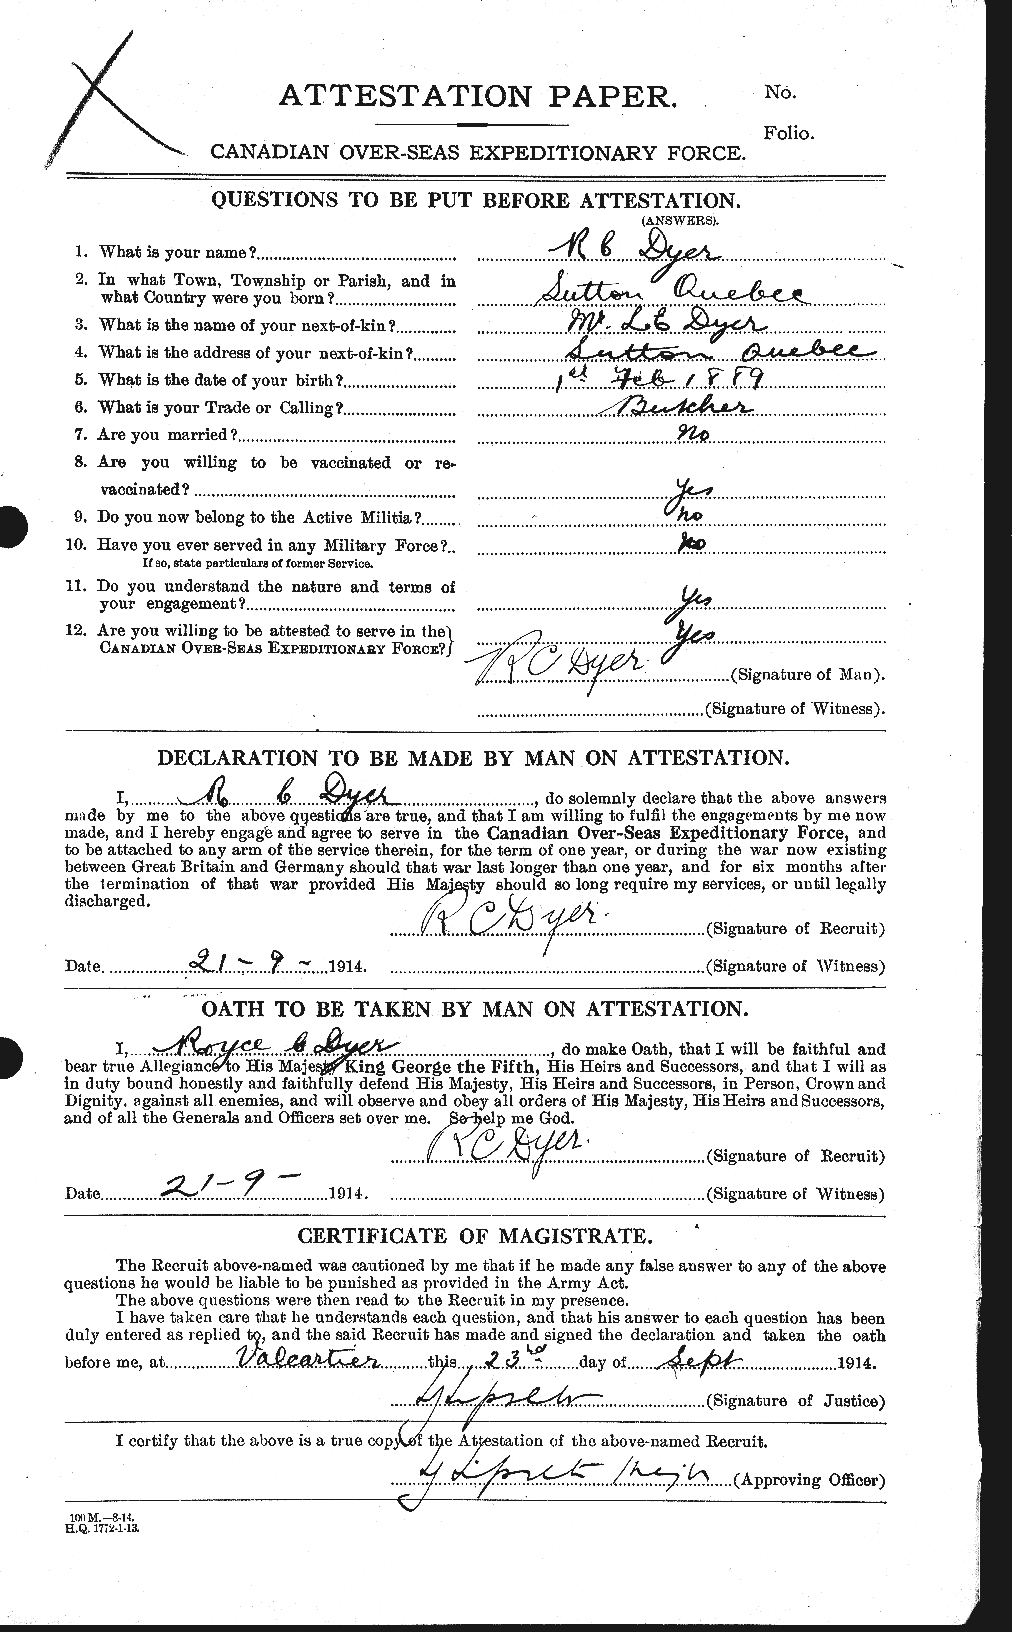 Dossiers du Personnel de la Première Guerre mondiale - CEC 305857a